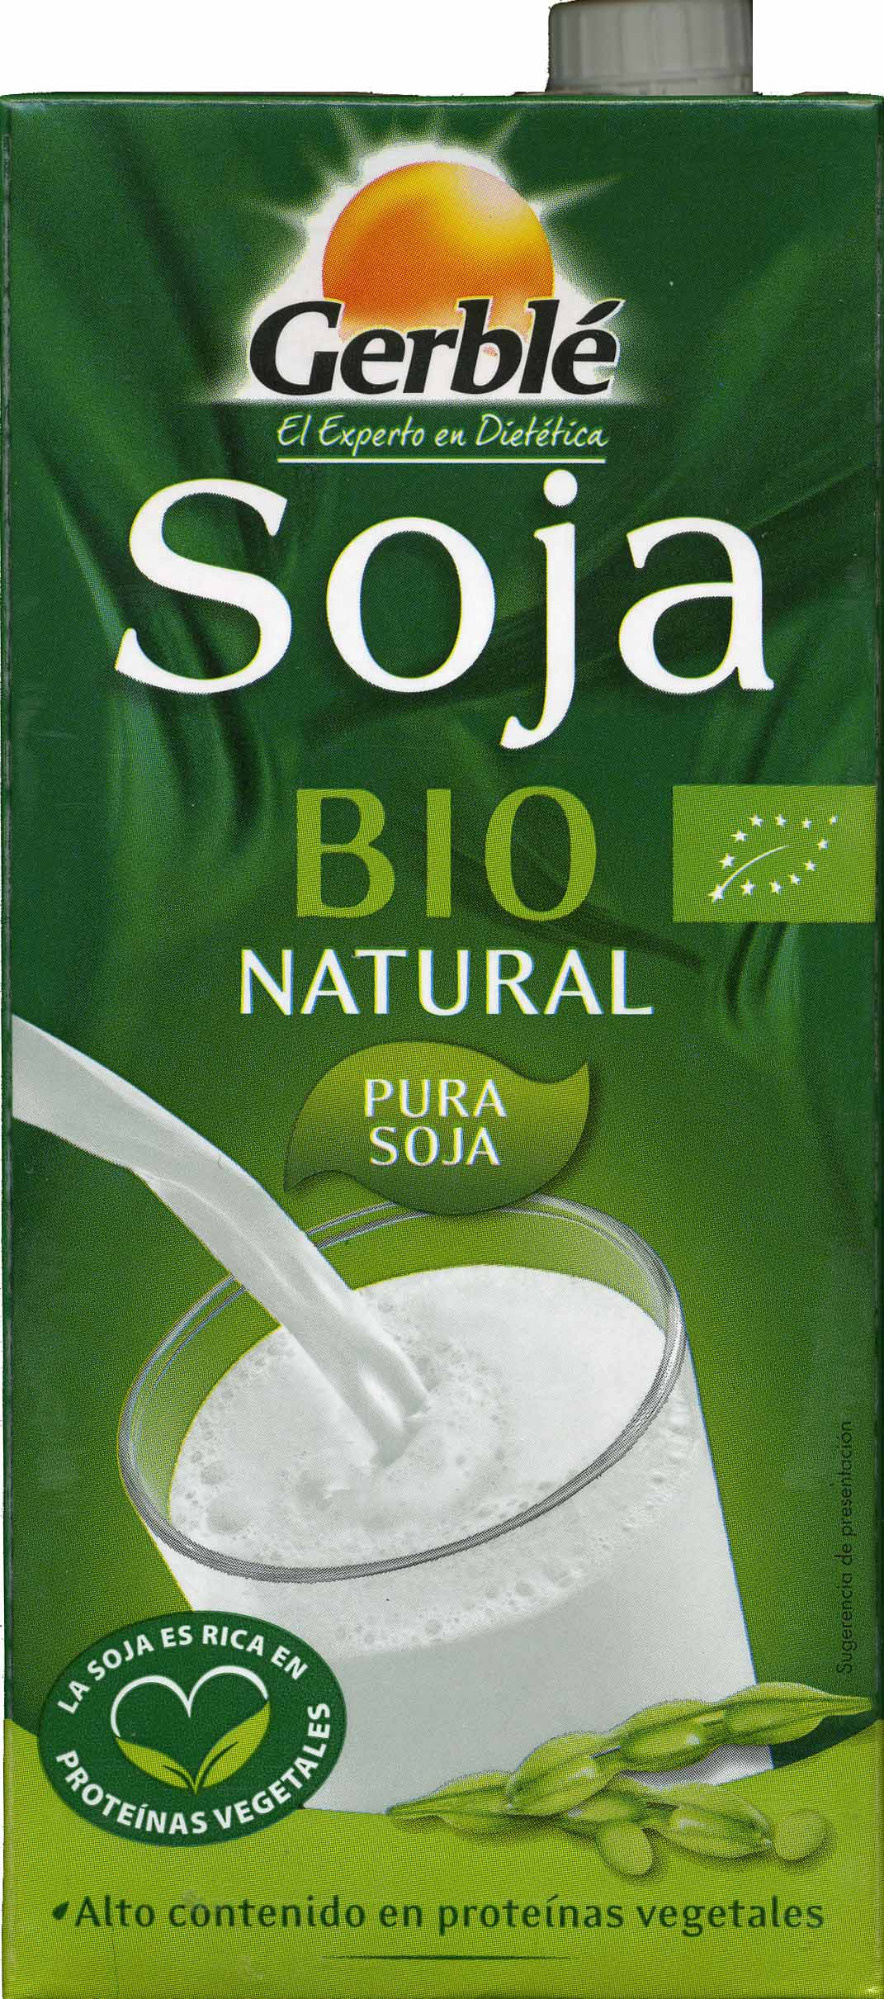 Bebida de soja ecológica - Product - es